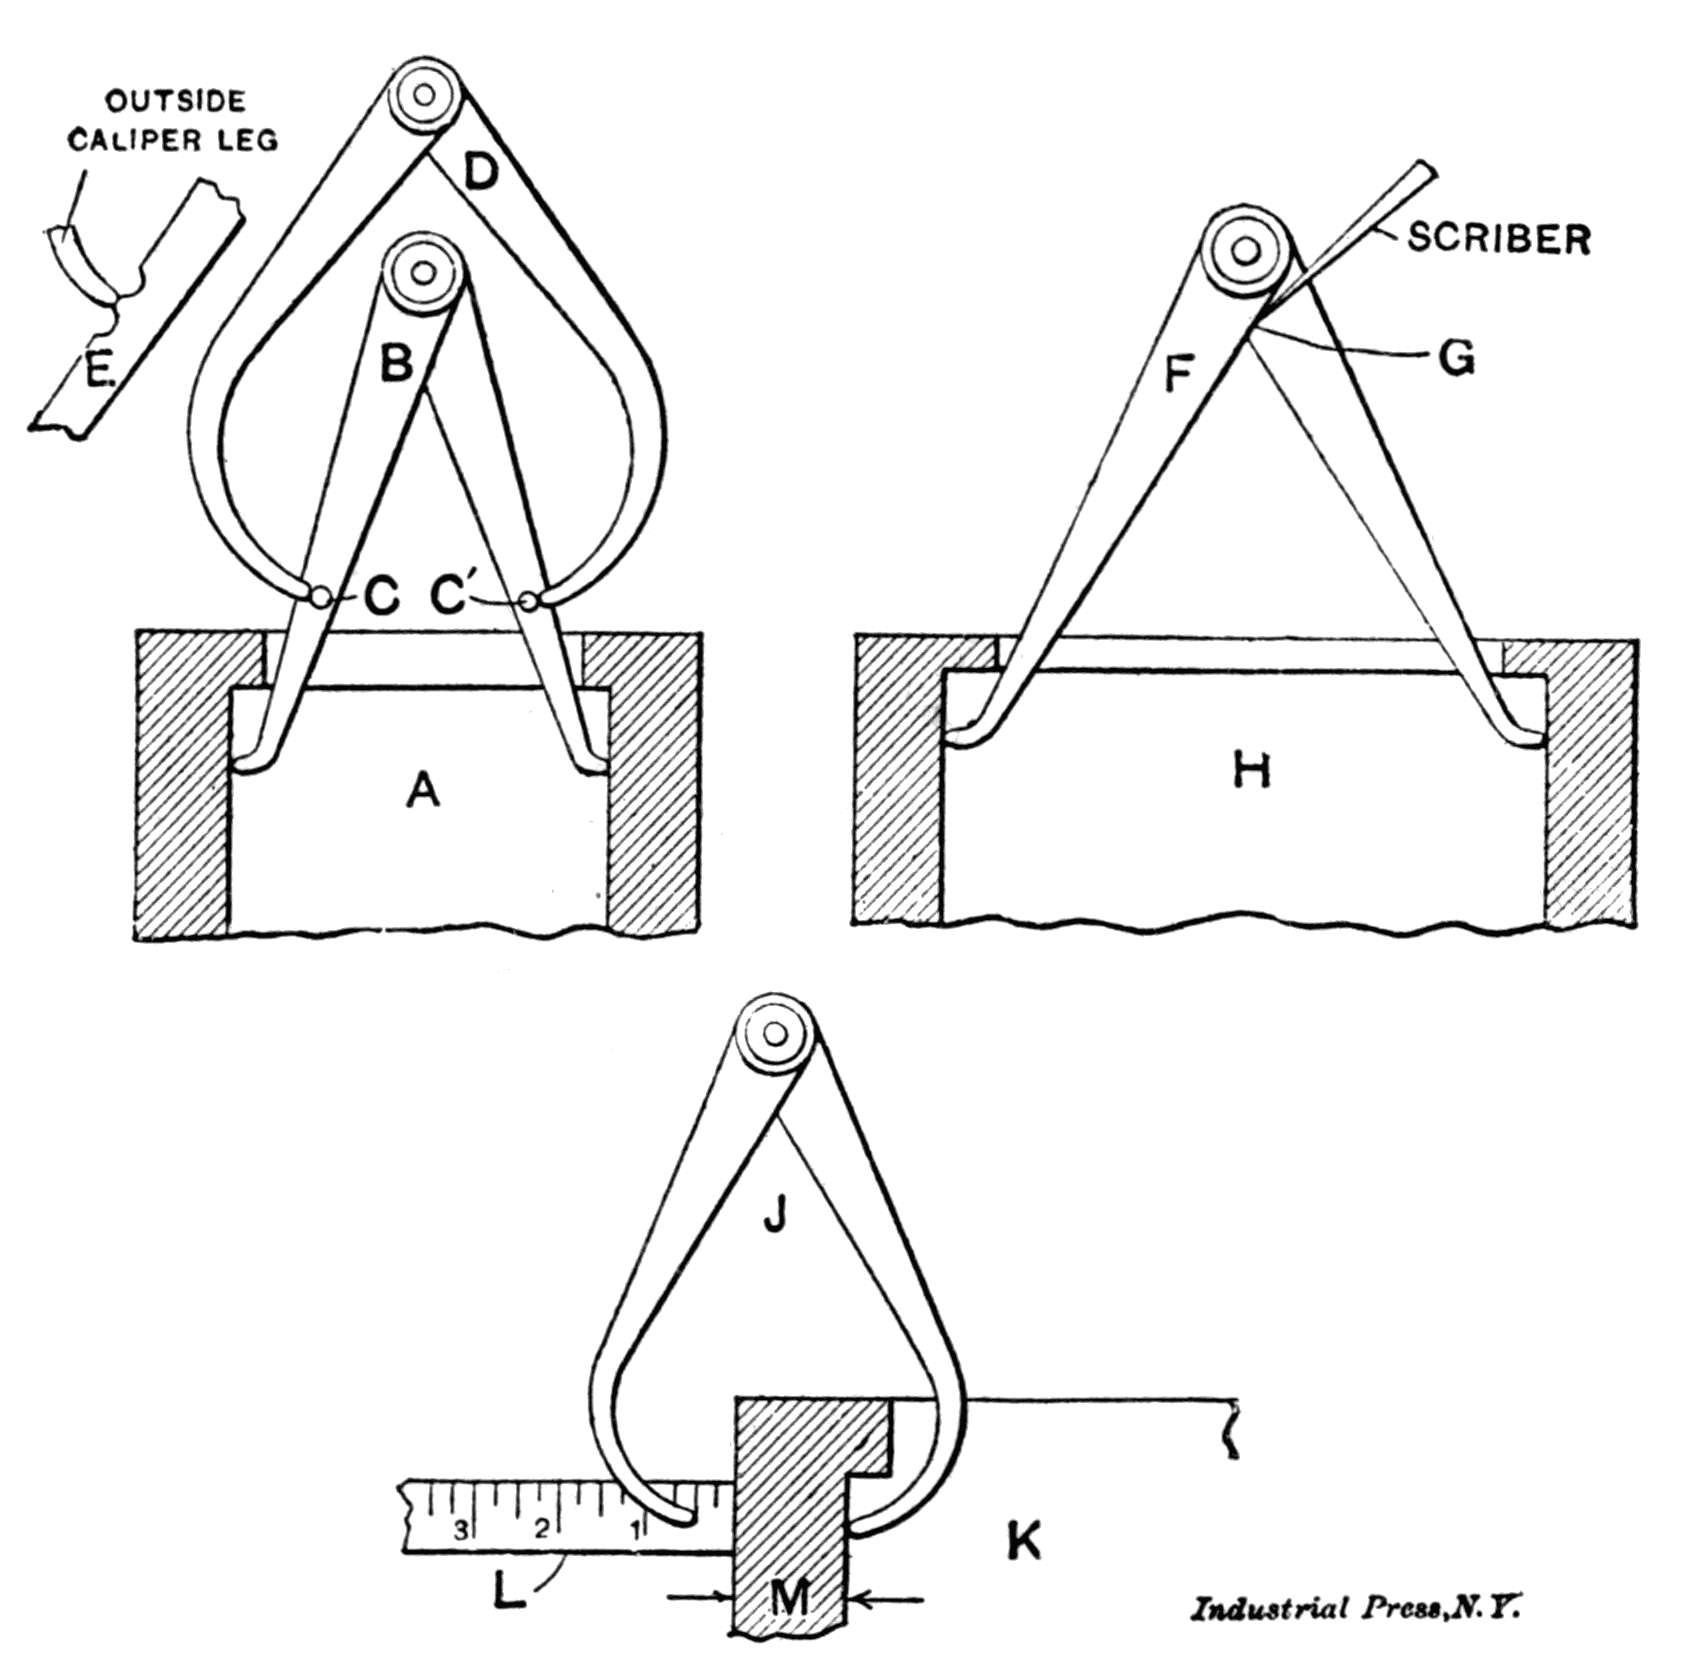 Fig. 7. Methods of Inside Calipering